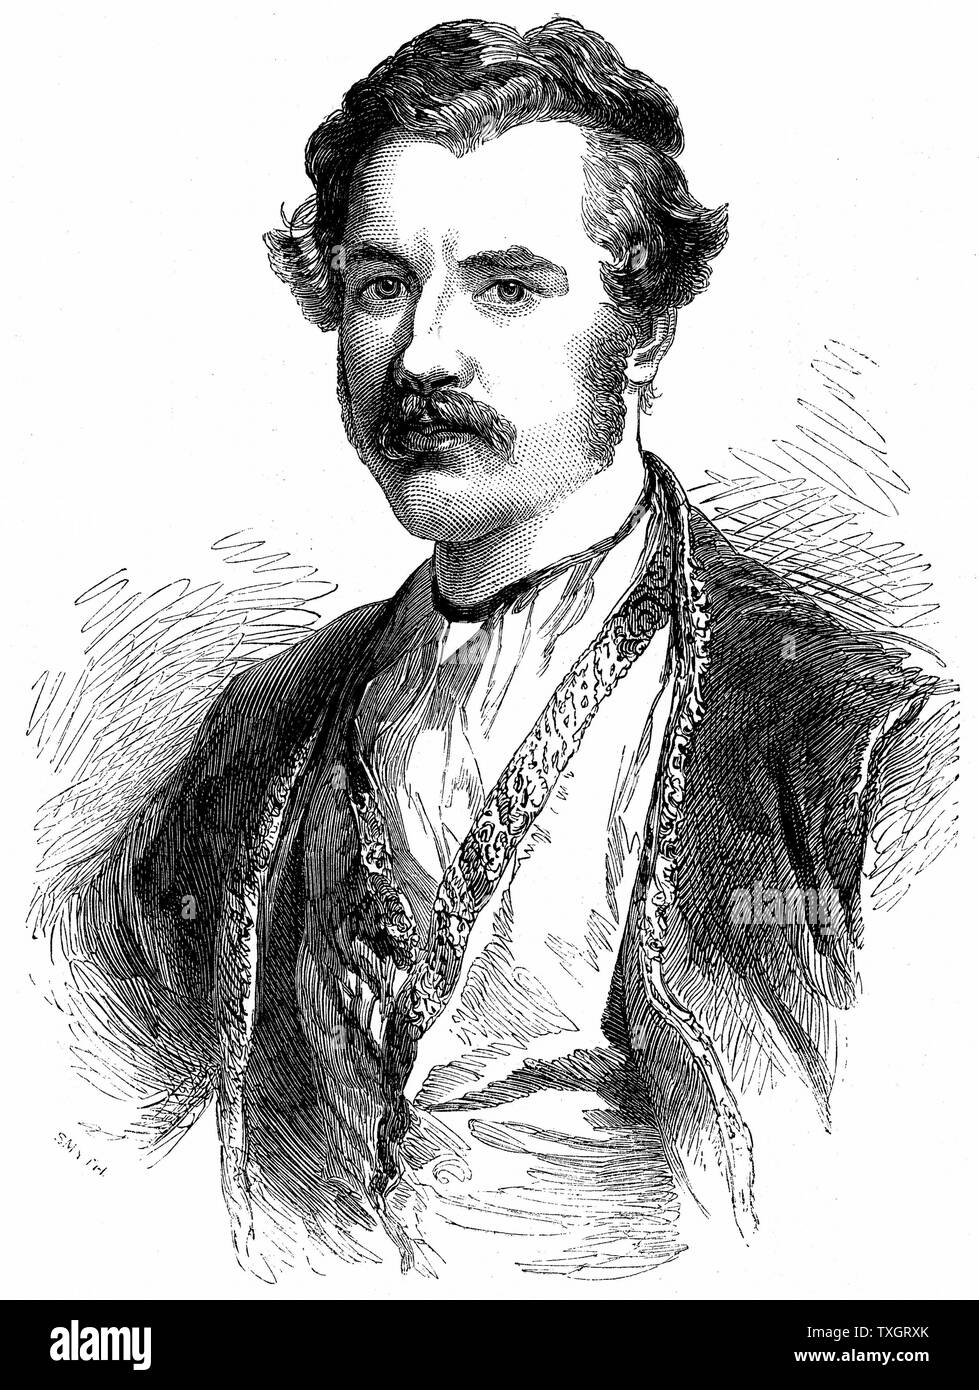 Austen Henry Layard (1817-1894) britische Archäologe, poltician und Diplomat. Ausgegraben Nimrud/Ninive, Irak. 1851 Holzstich London Stockfoto